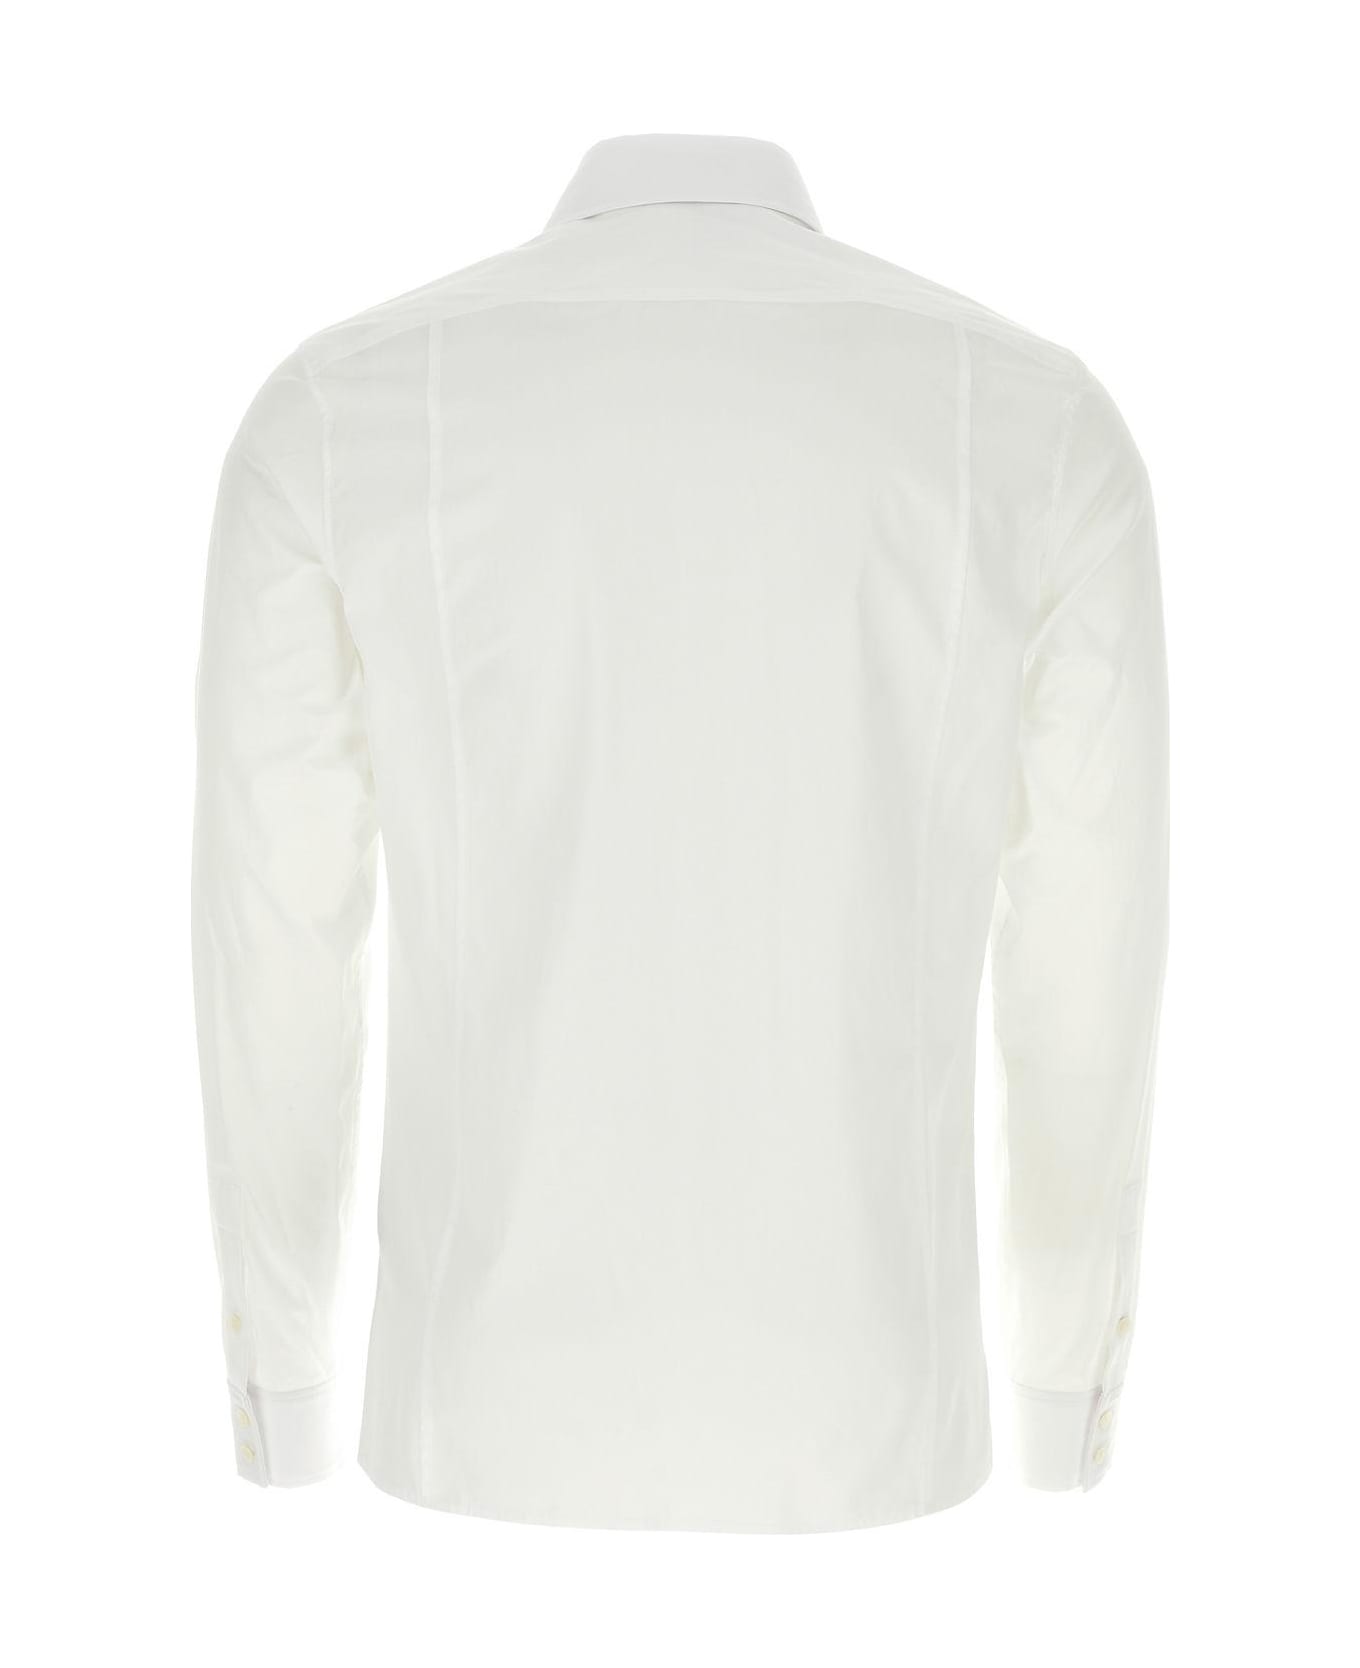 Balmain White Poplin Shirt - BLANC シャツ